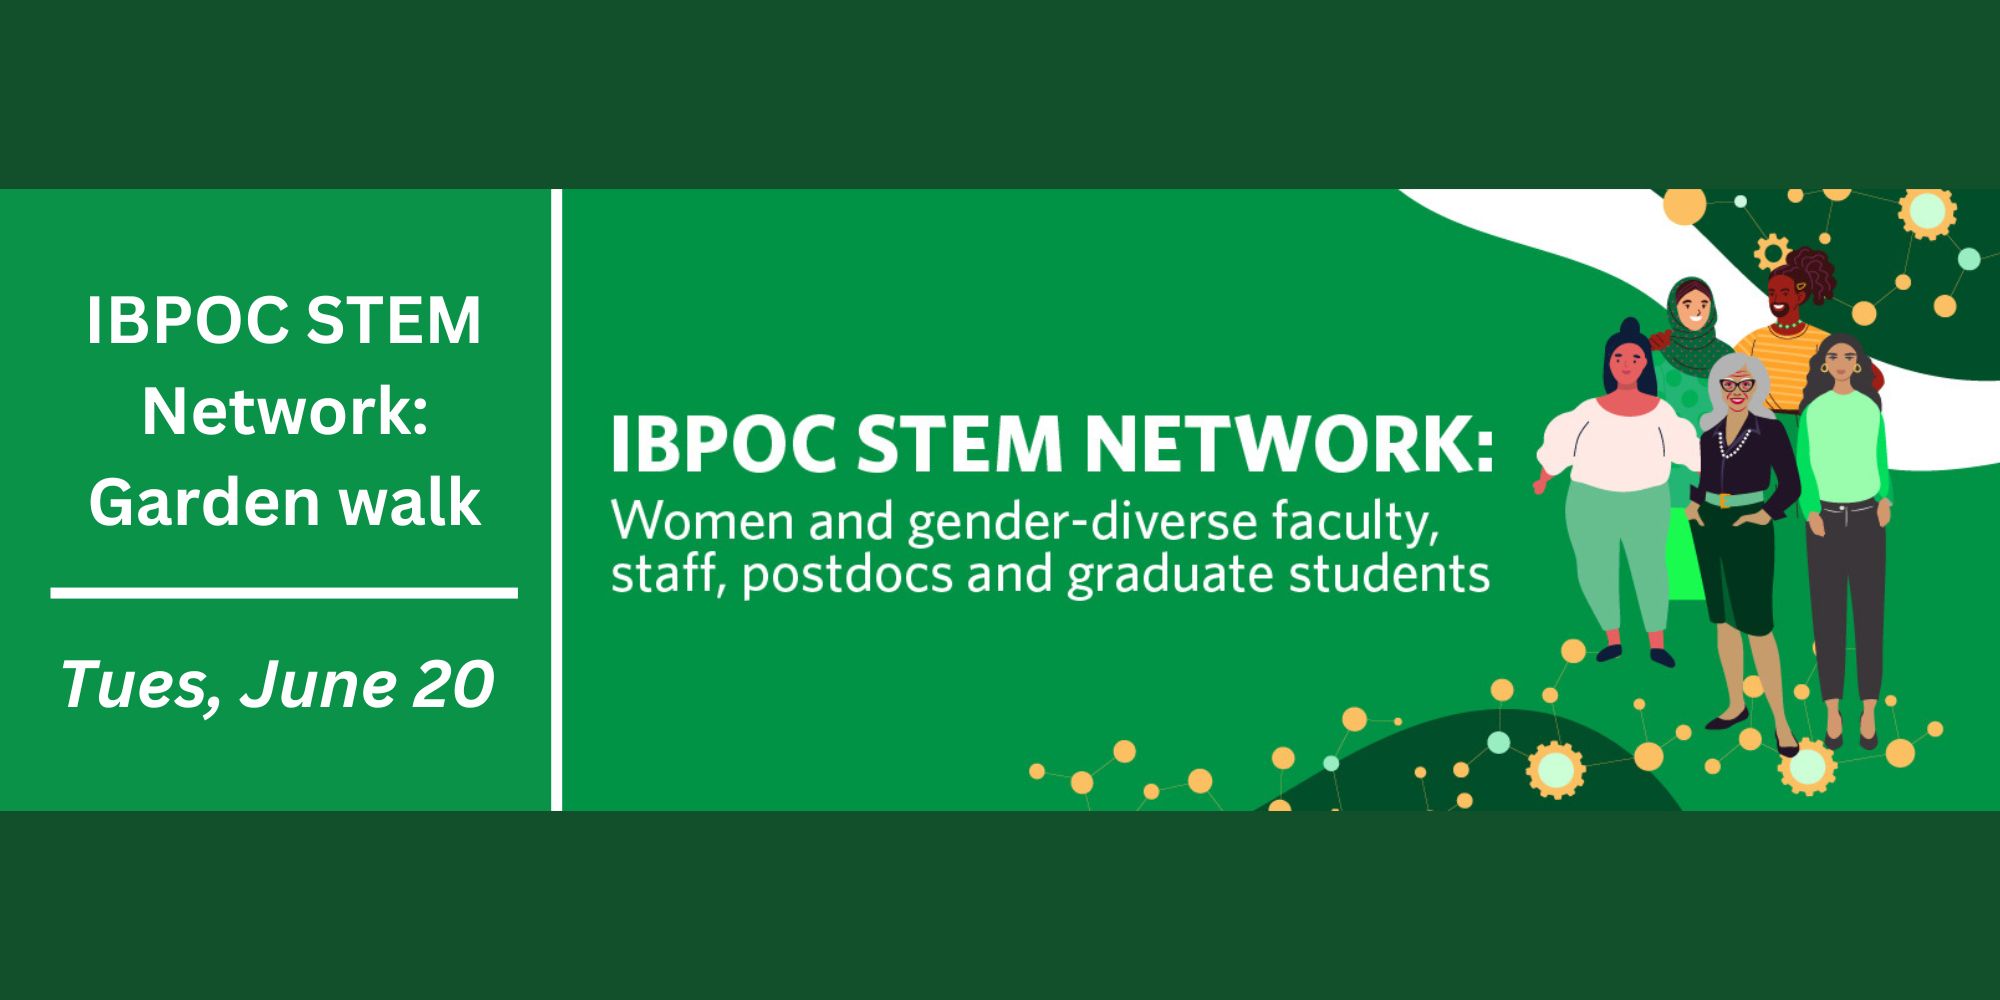 IBPOC STEM Network: Garden walk